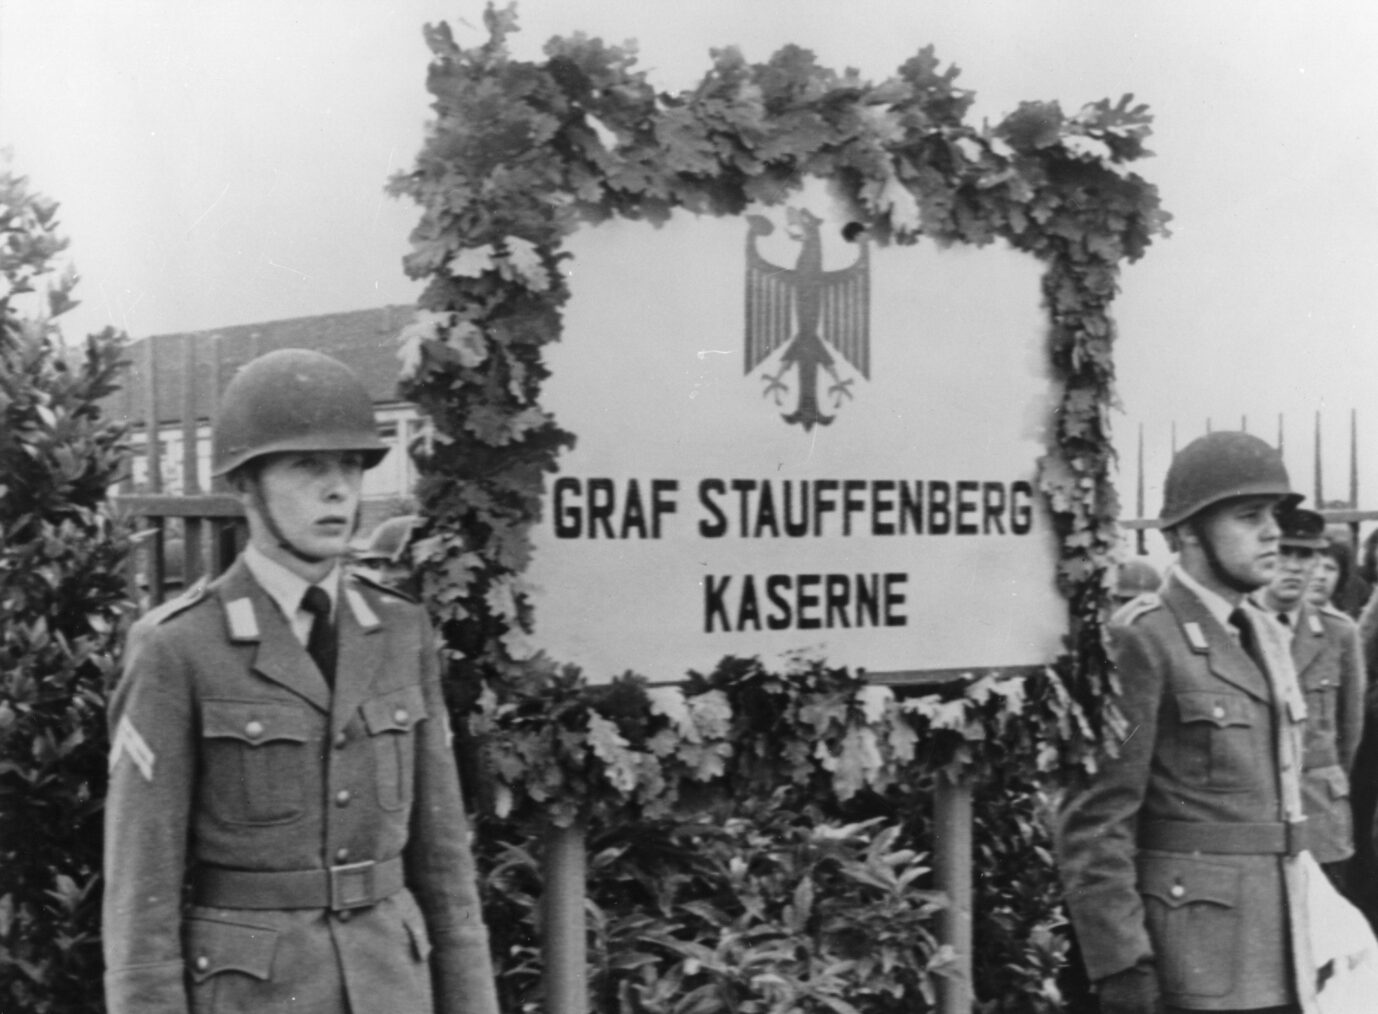 Kasernen der Bundeswehr werden nach den Widerstandskämpfern gegen das Hitlerregime benannt: Blick auf das während einer Feierstunde enthüllte Namensschild der Bundeswehrkaserne in Sigmaringen, die nach dem Widerstandskämpfer Claus Schenk Graf von Stauffenberg benannt wurde (Themenbild)